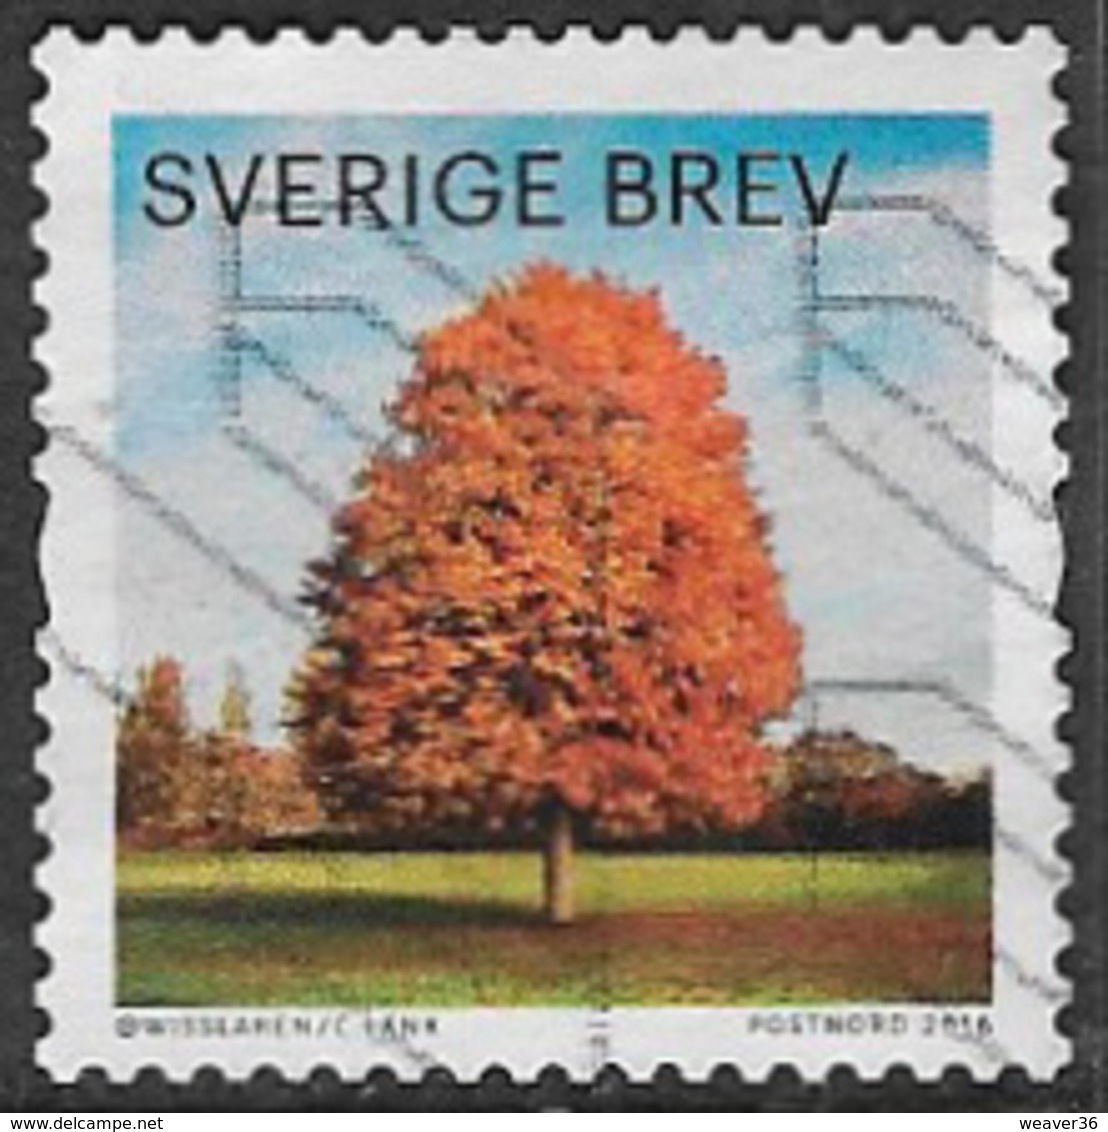 Sweden 2016 Autumn Glow Brev Type 4 Good/fine Used [39/31844/ND] - Gebraucht